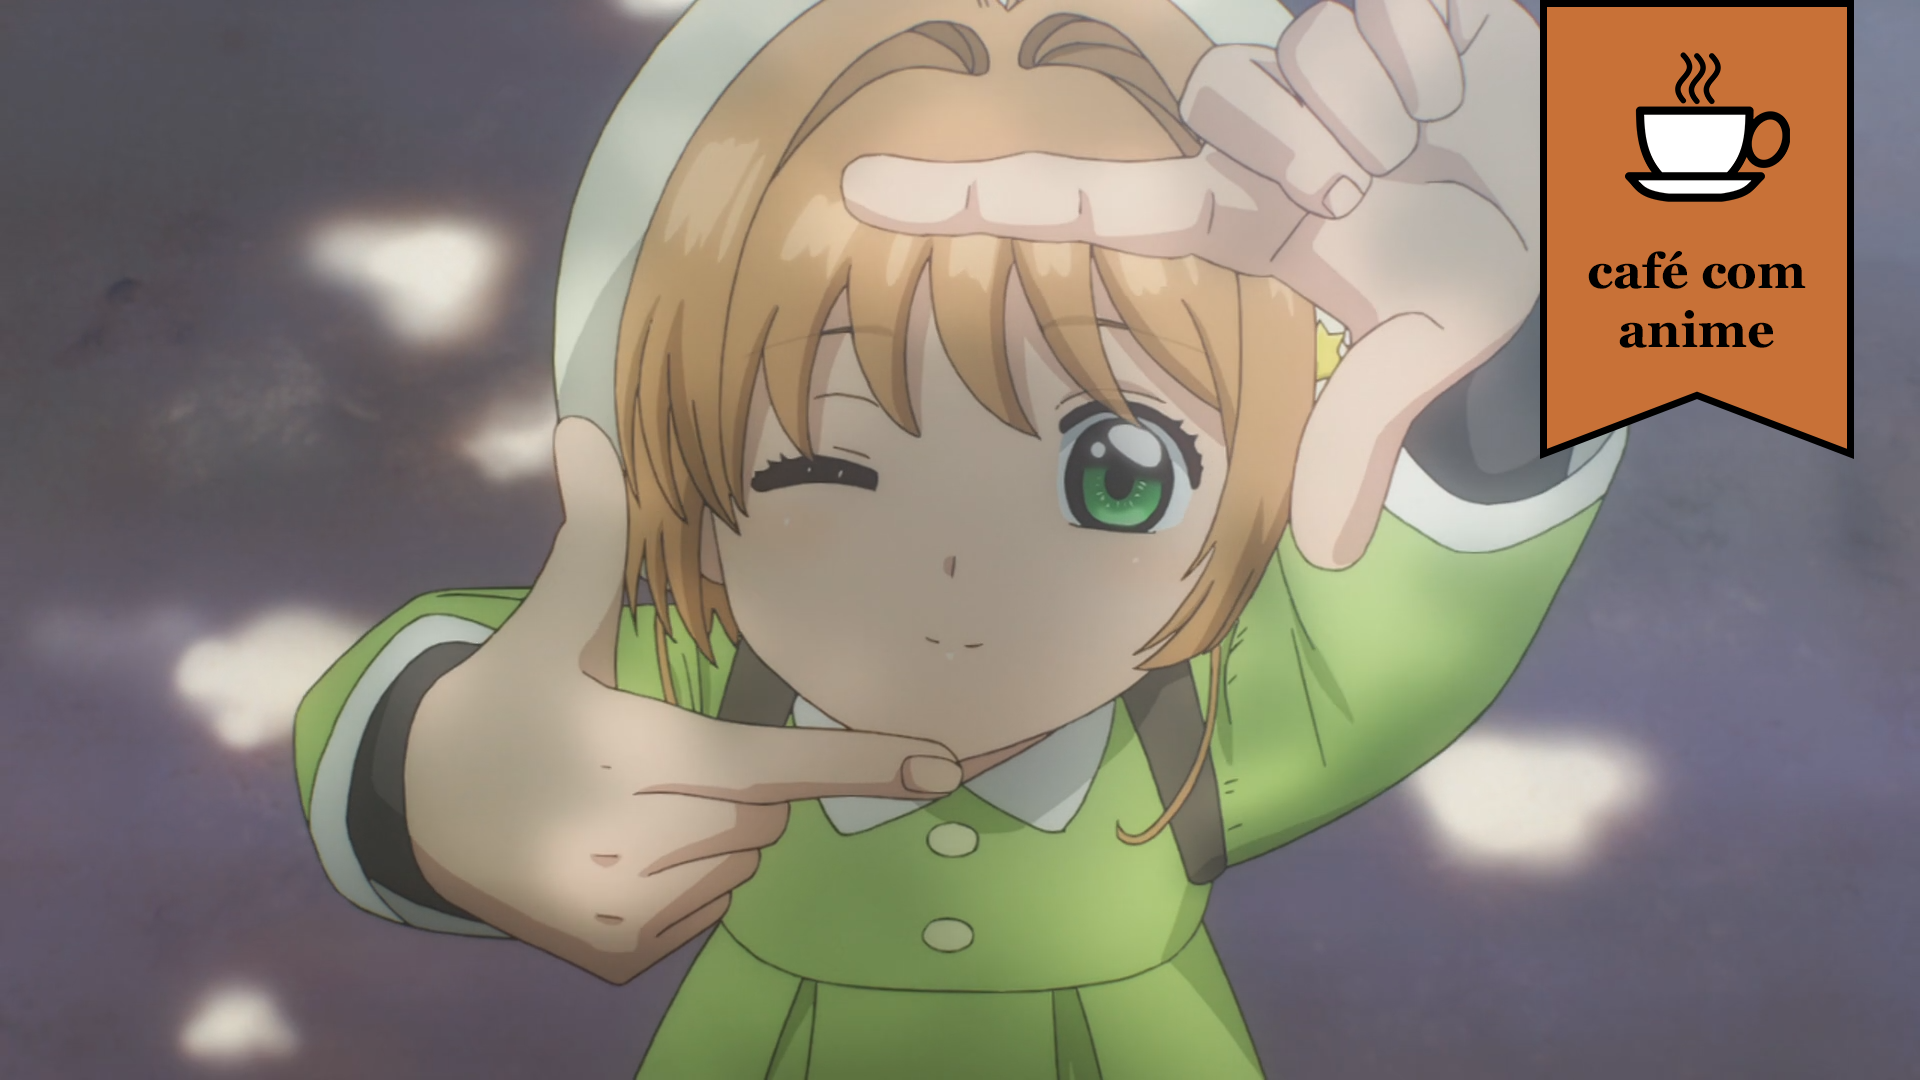 Café com Anime: “Cardcaptor Sakura: Clear Card Hen” episódio final –  finisgeekis